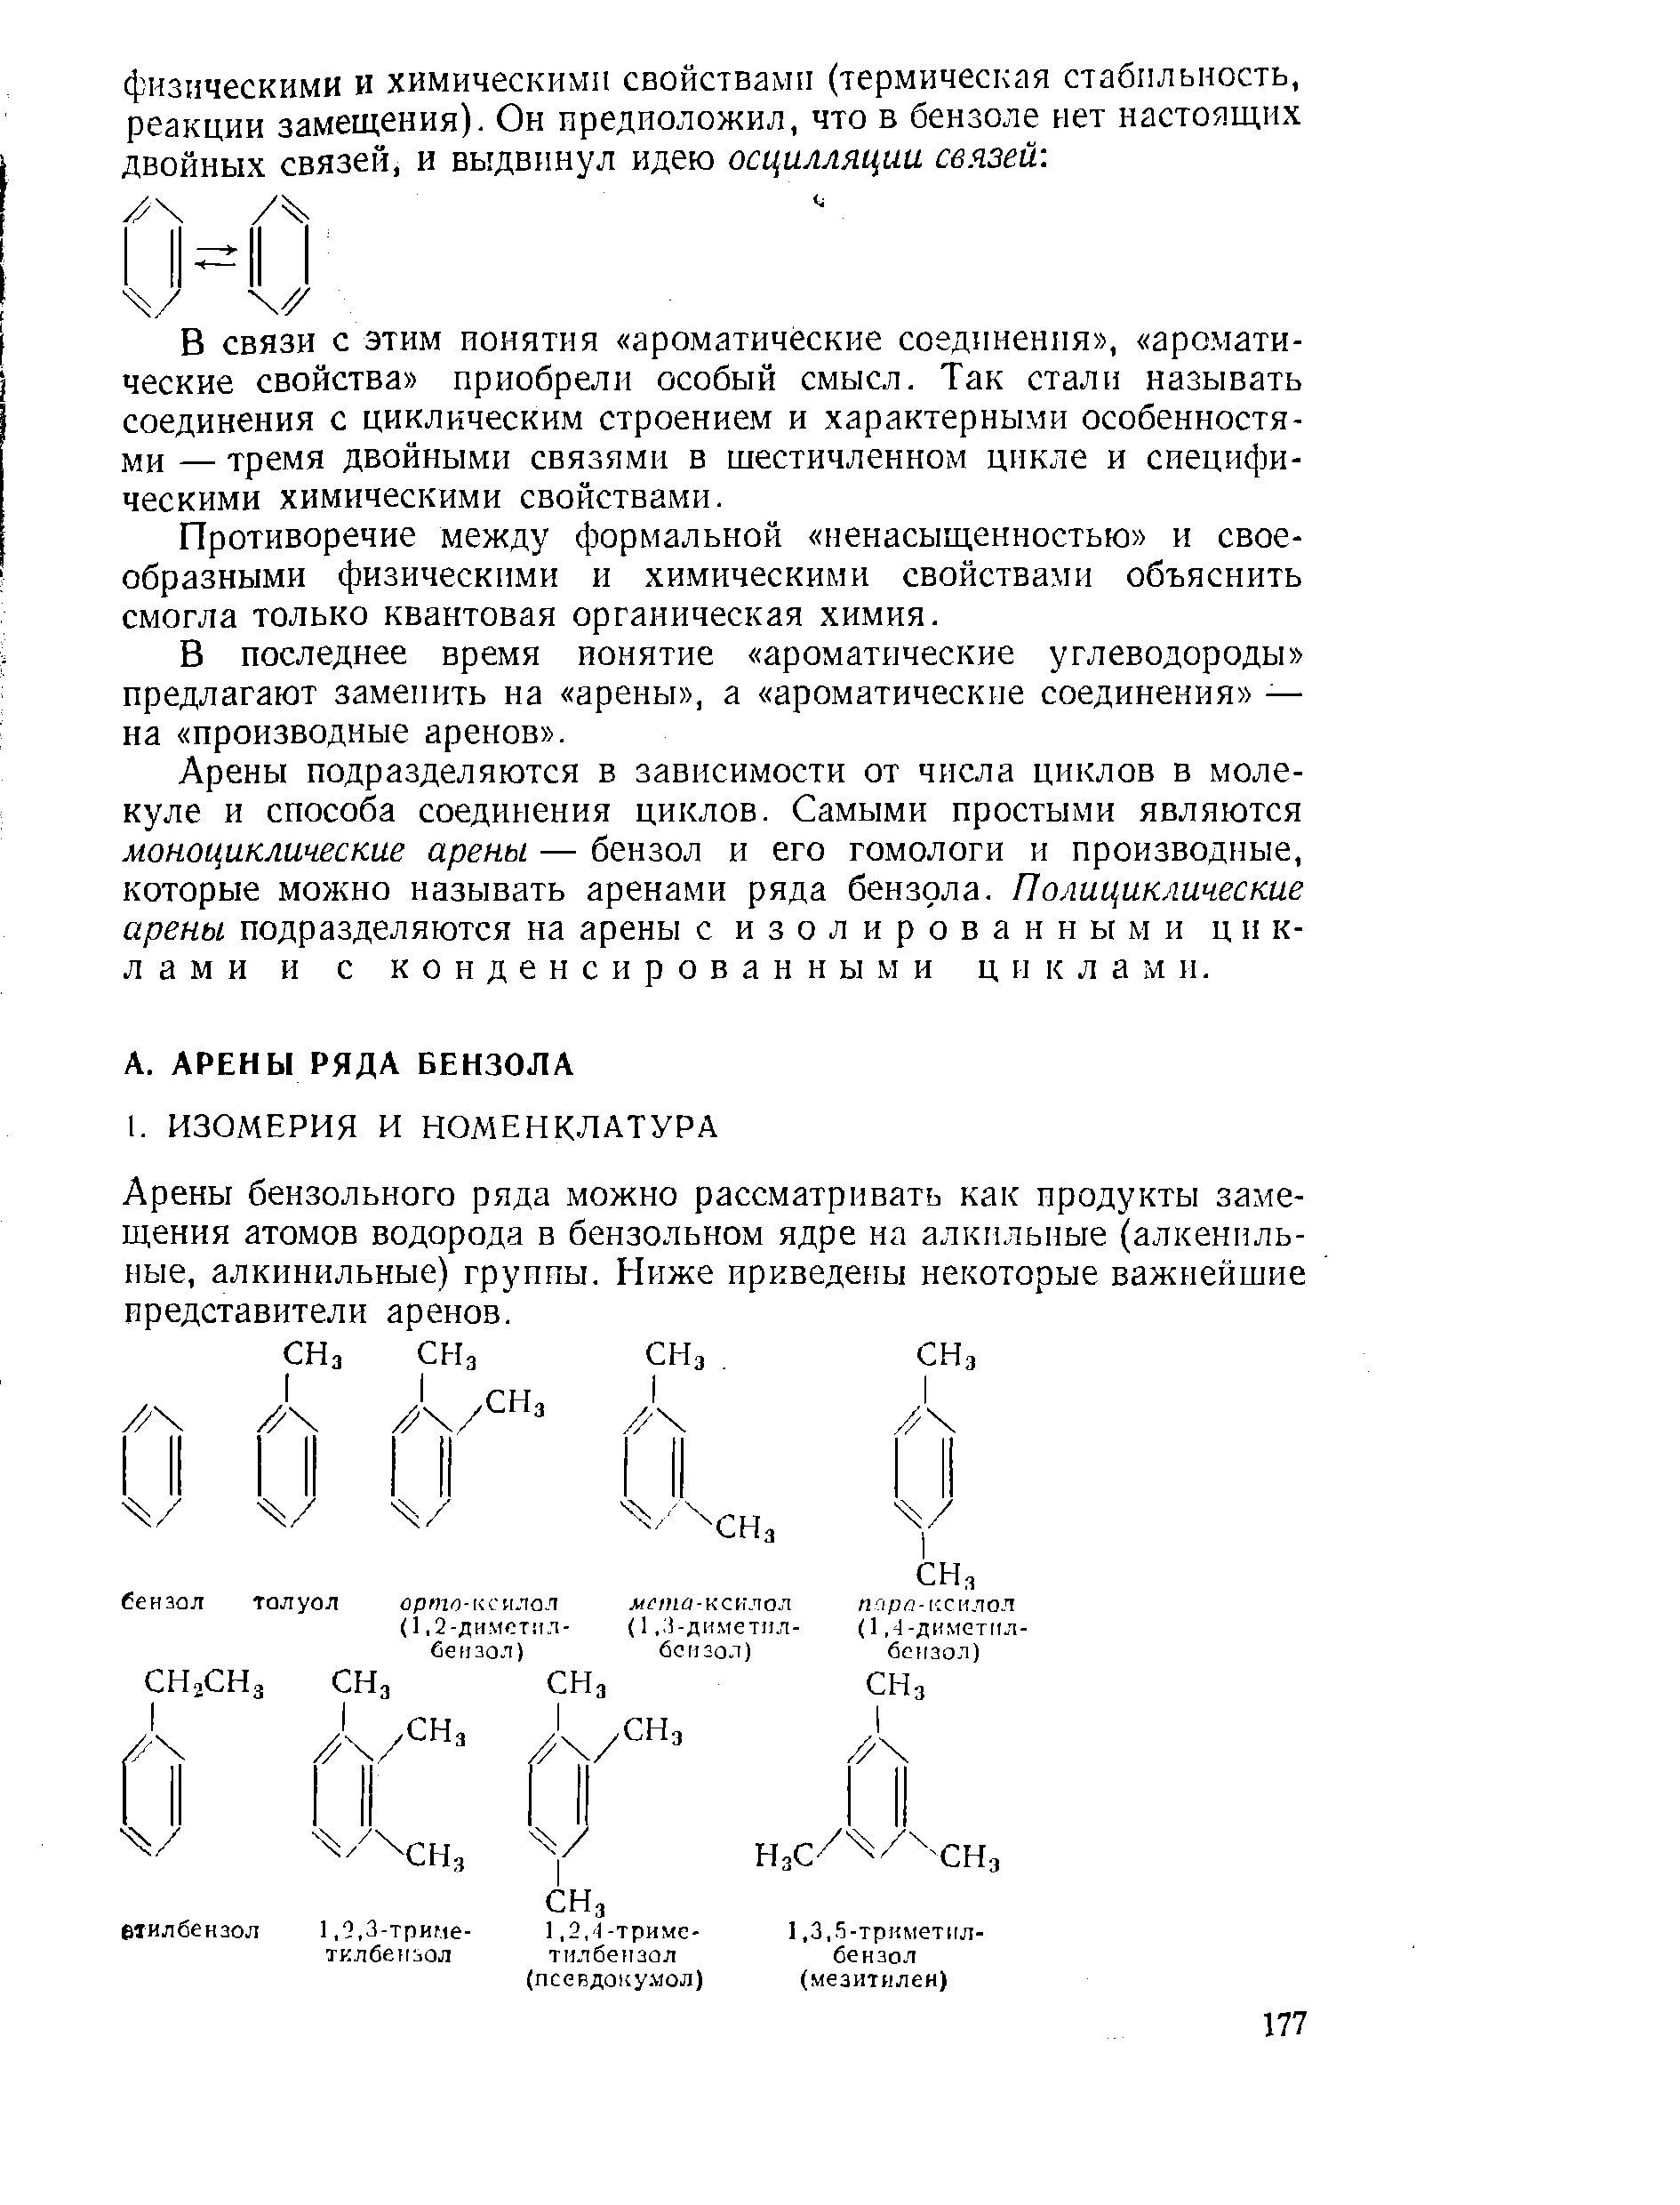 Арены бензольного ряда можно рассматривать как продукты замещения атомов водорода в бензольном ядре на алкильные (алкенильные, алкинильные) группы. Ниже приведены некоторые важнейшие представители аренов.